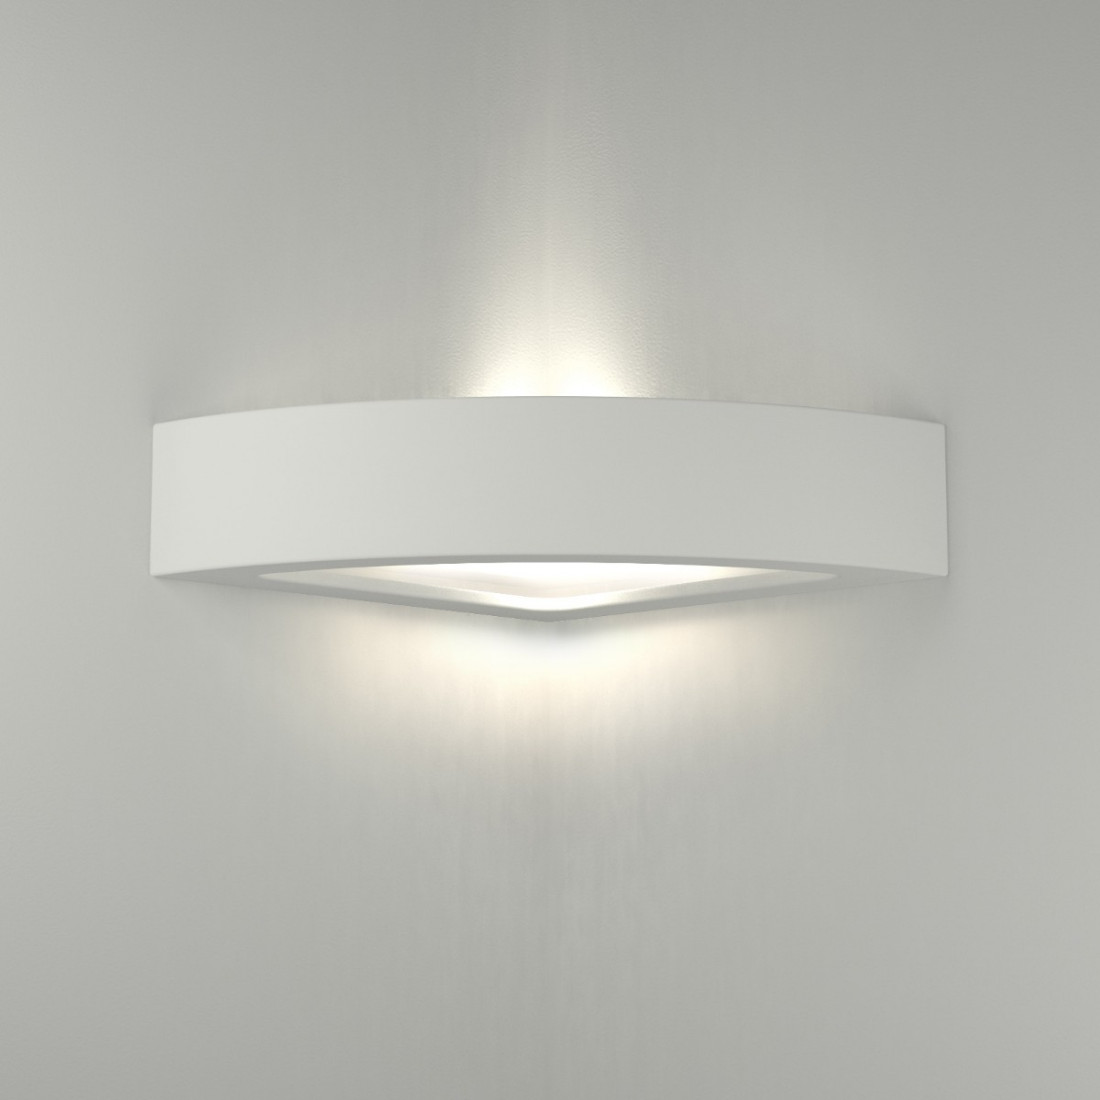 Applique BF-8056 42 E27 LED angolo gesso vetro biemissione lampada parete verniciabile interno IP20